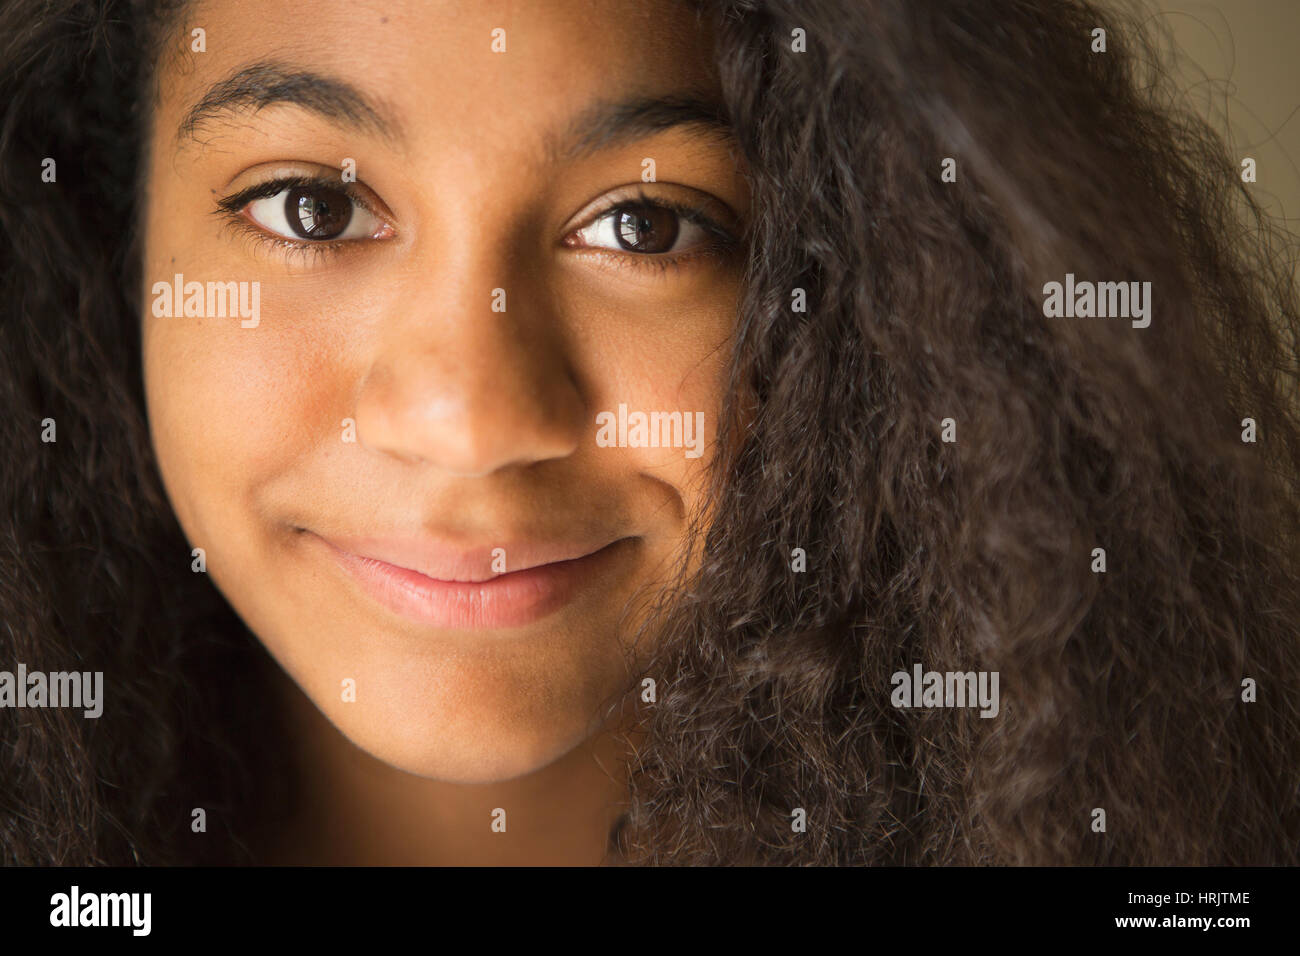 Ein junge Teenager-Mädchen, Lächeln, Porträt. Stockfoto